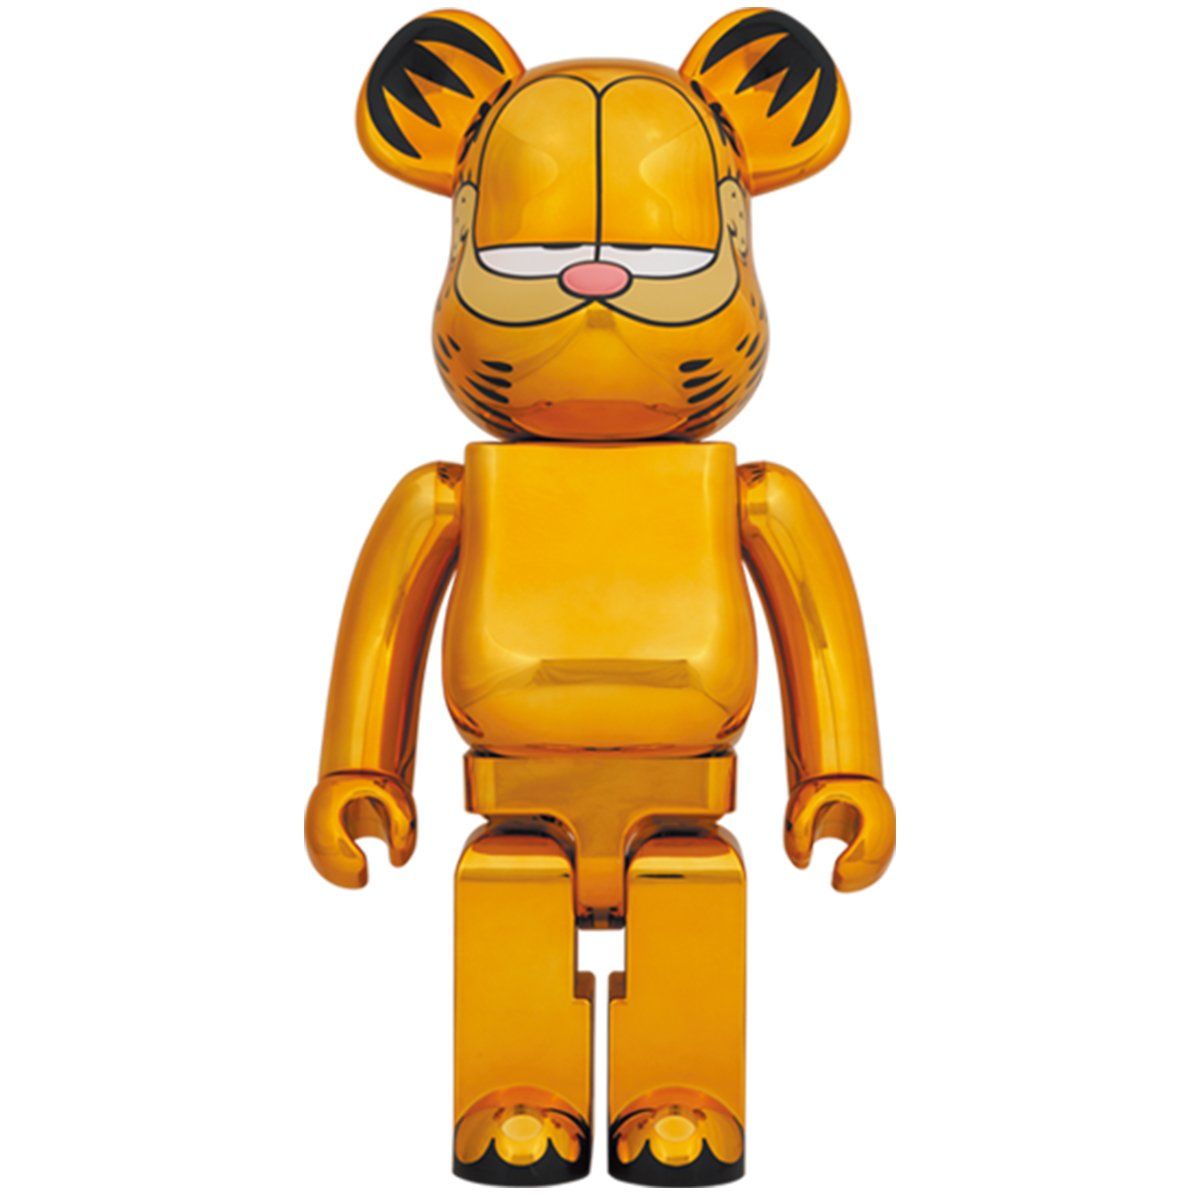  Bearbrick Garfield Size 1000% Đồ Chơi Mô Hình Cao Cấp Phiên Bản Gold Chrome Chính Hãng 